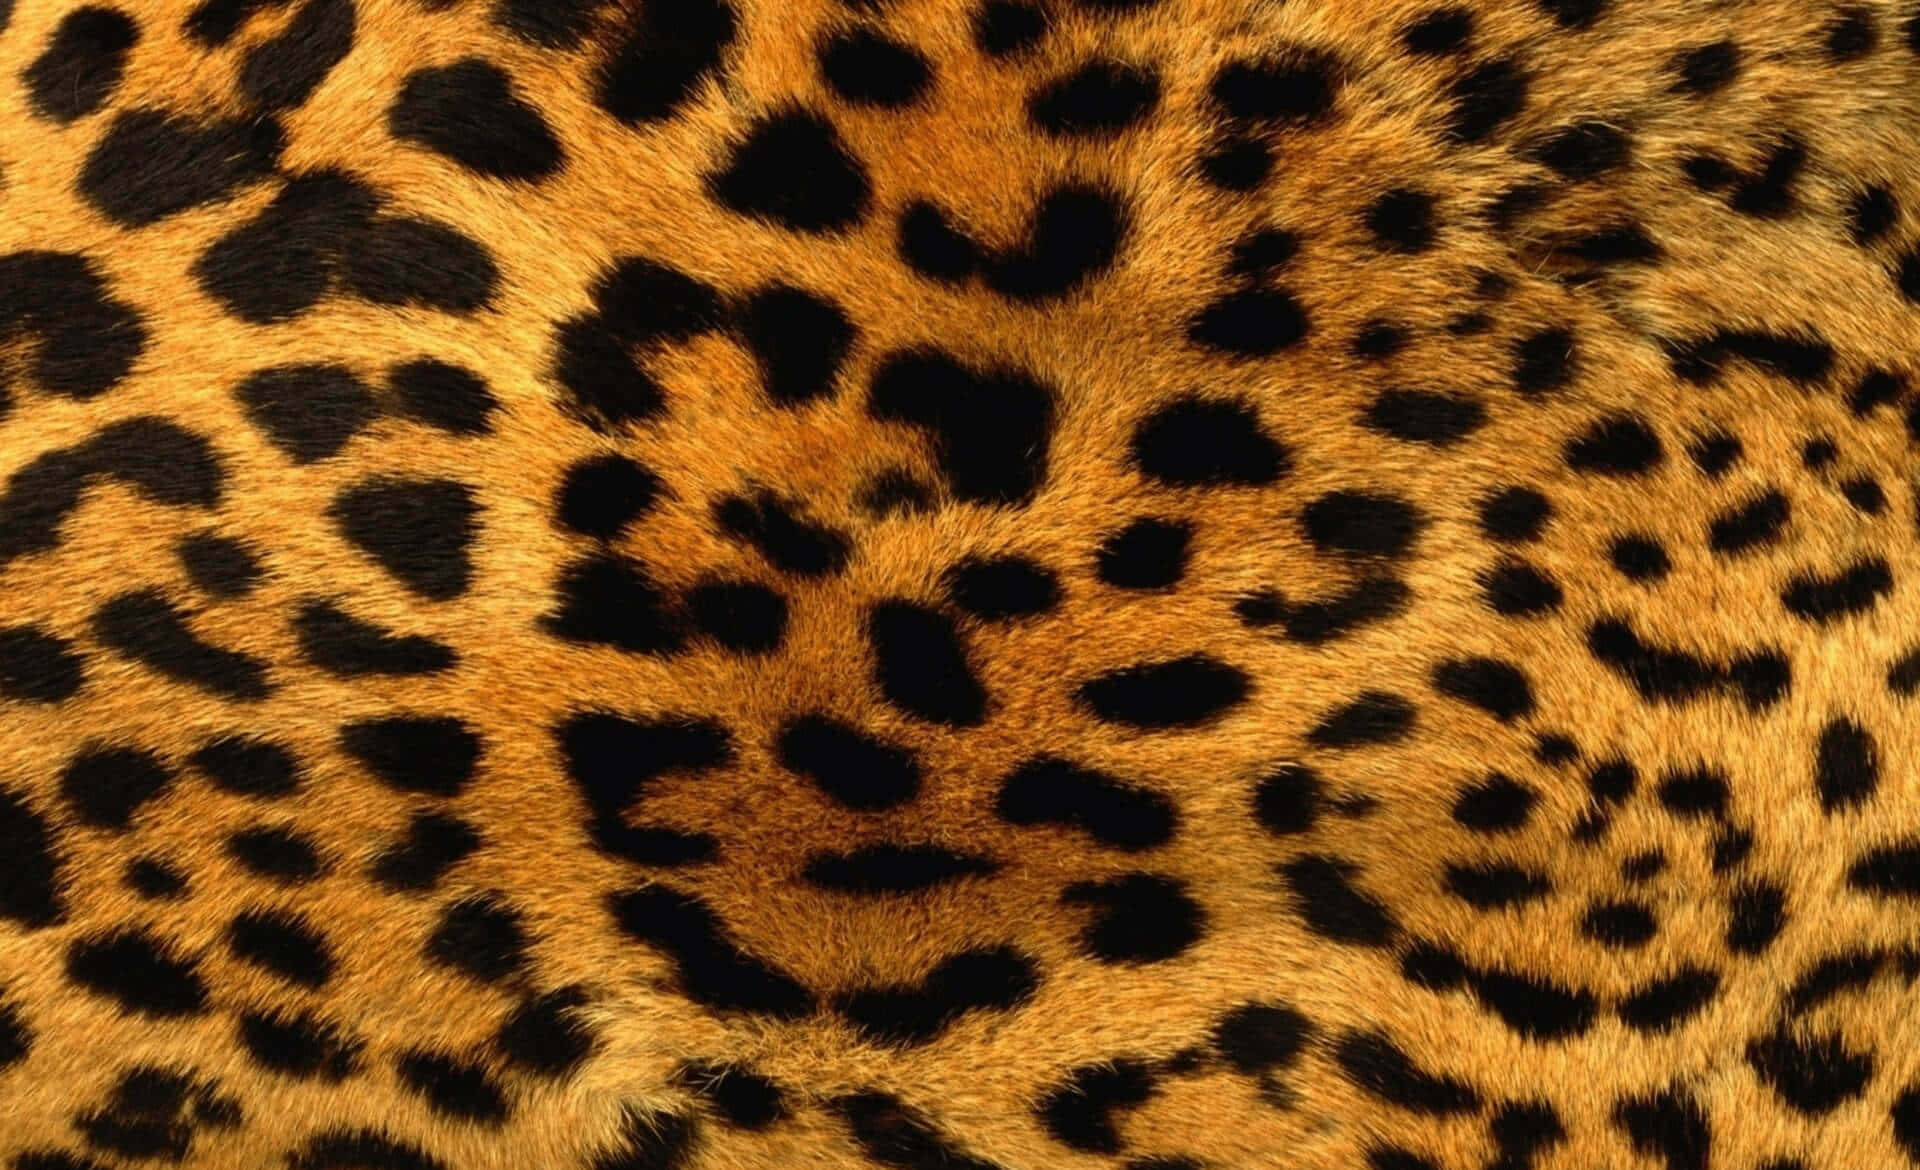 Unleash your inner fierceness with Glitter Leopard Wallpaper